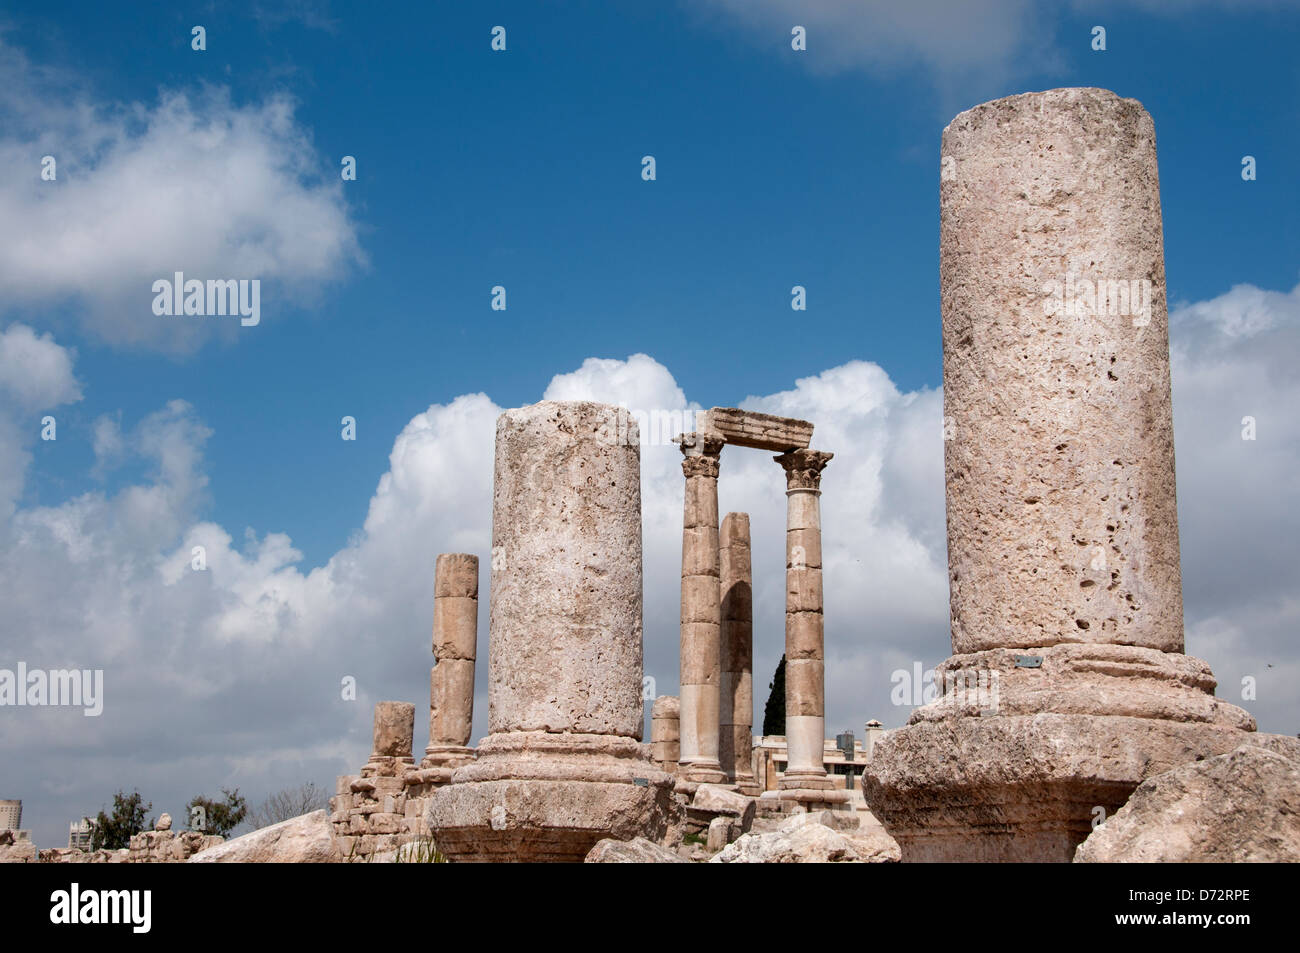 La Jordanie, Amman. La citadelle romaine. Vue touristique Banque D'Images